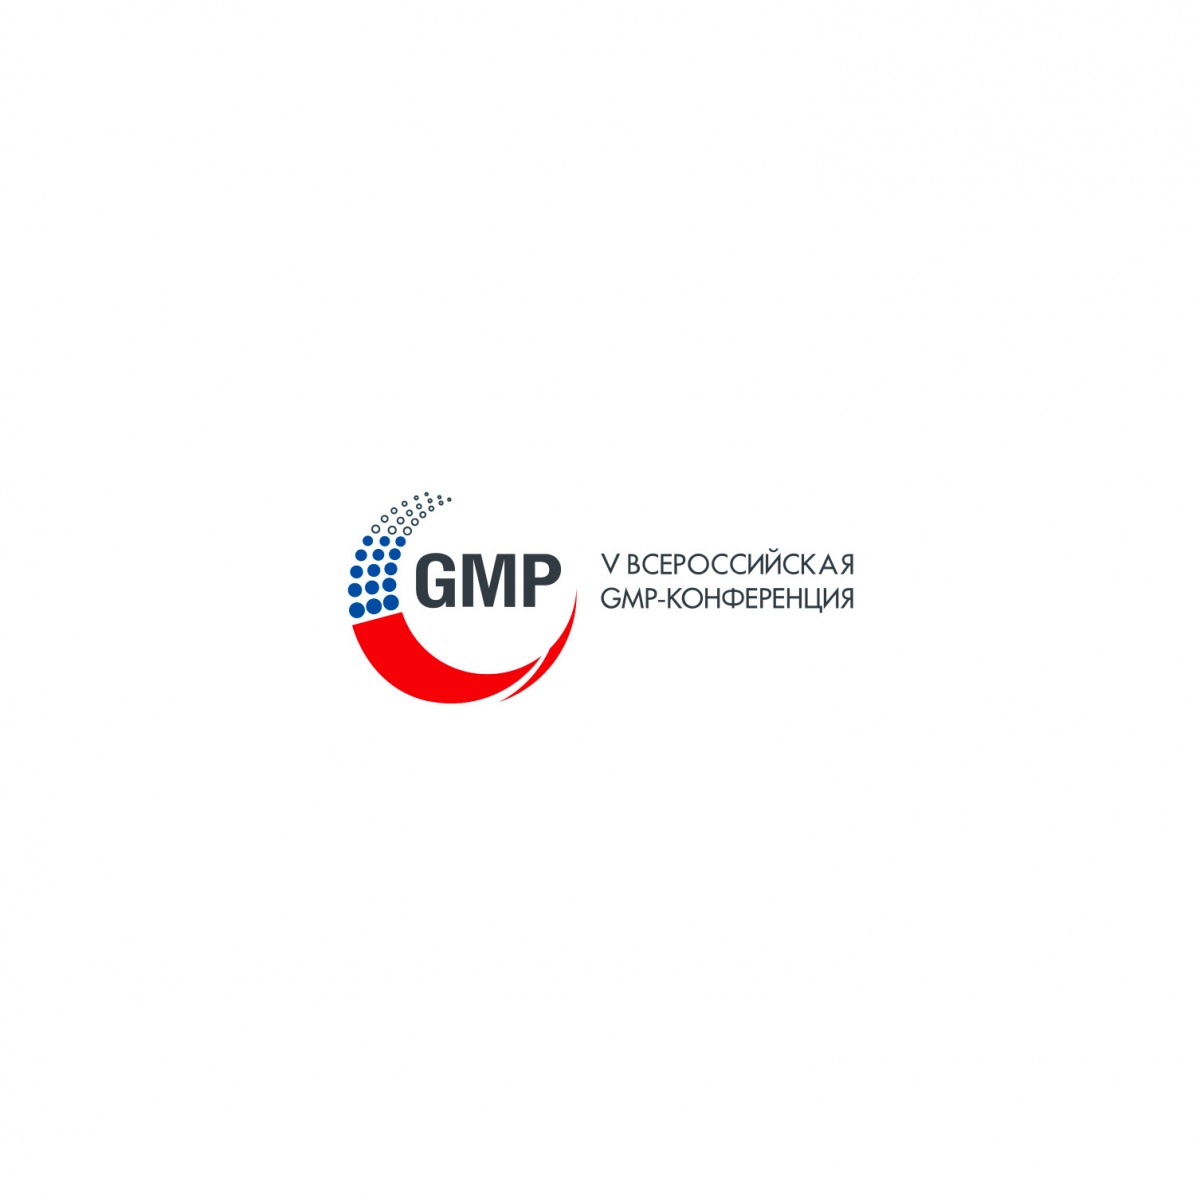 Приглашаем на 5-ю Всероссийскую GMP-конференцию